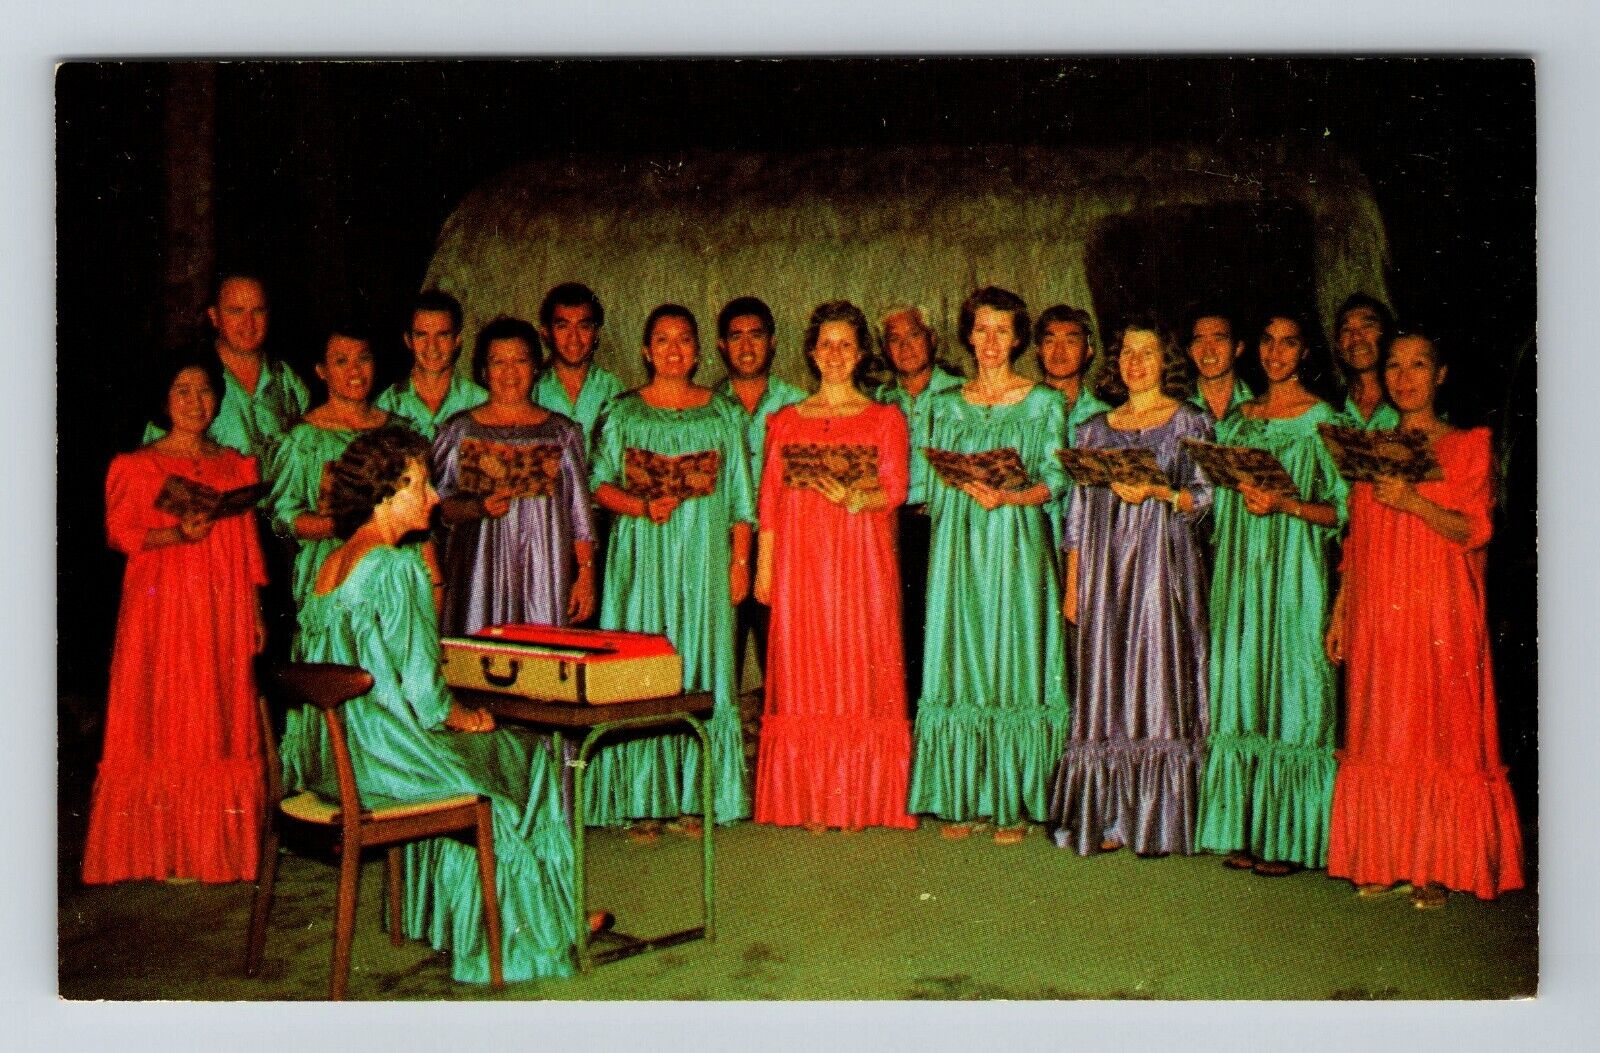 Kona HI-Hawaii, The Ohana Choir, Church Hymns And Choir, Vintage Postcard